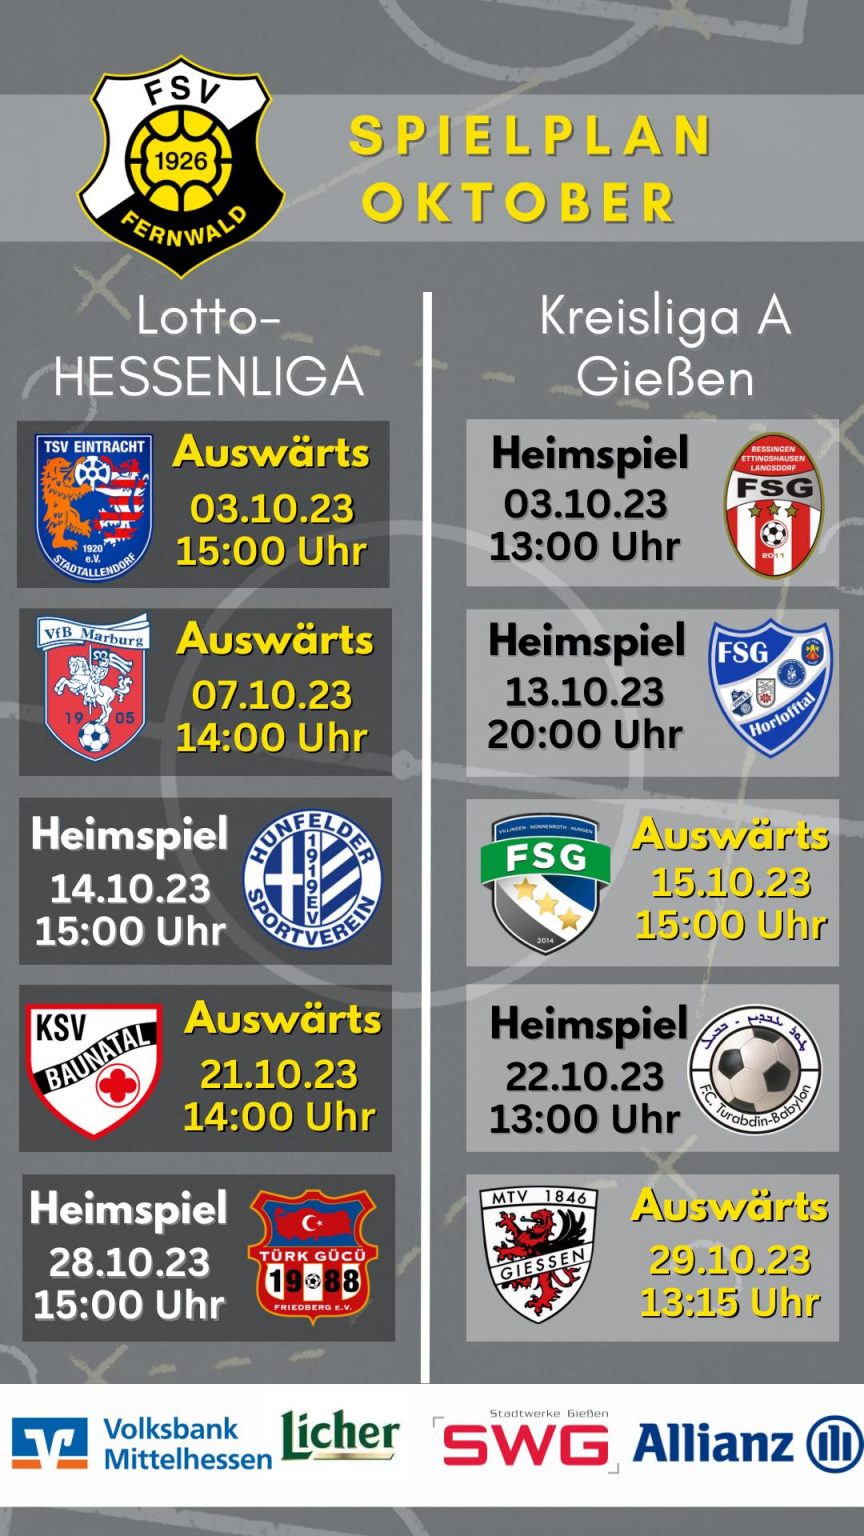 Der Oktober hat es in sich, gleich drei Derbys stehen für den FSV in der LOTTO Hessenliga an.